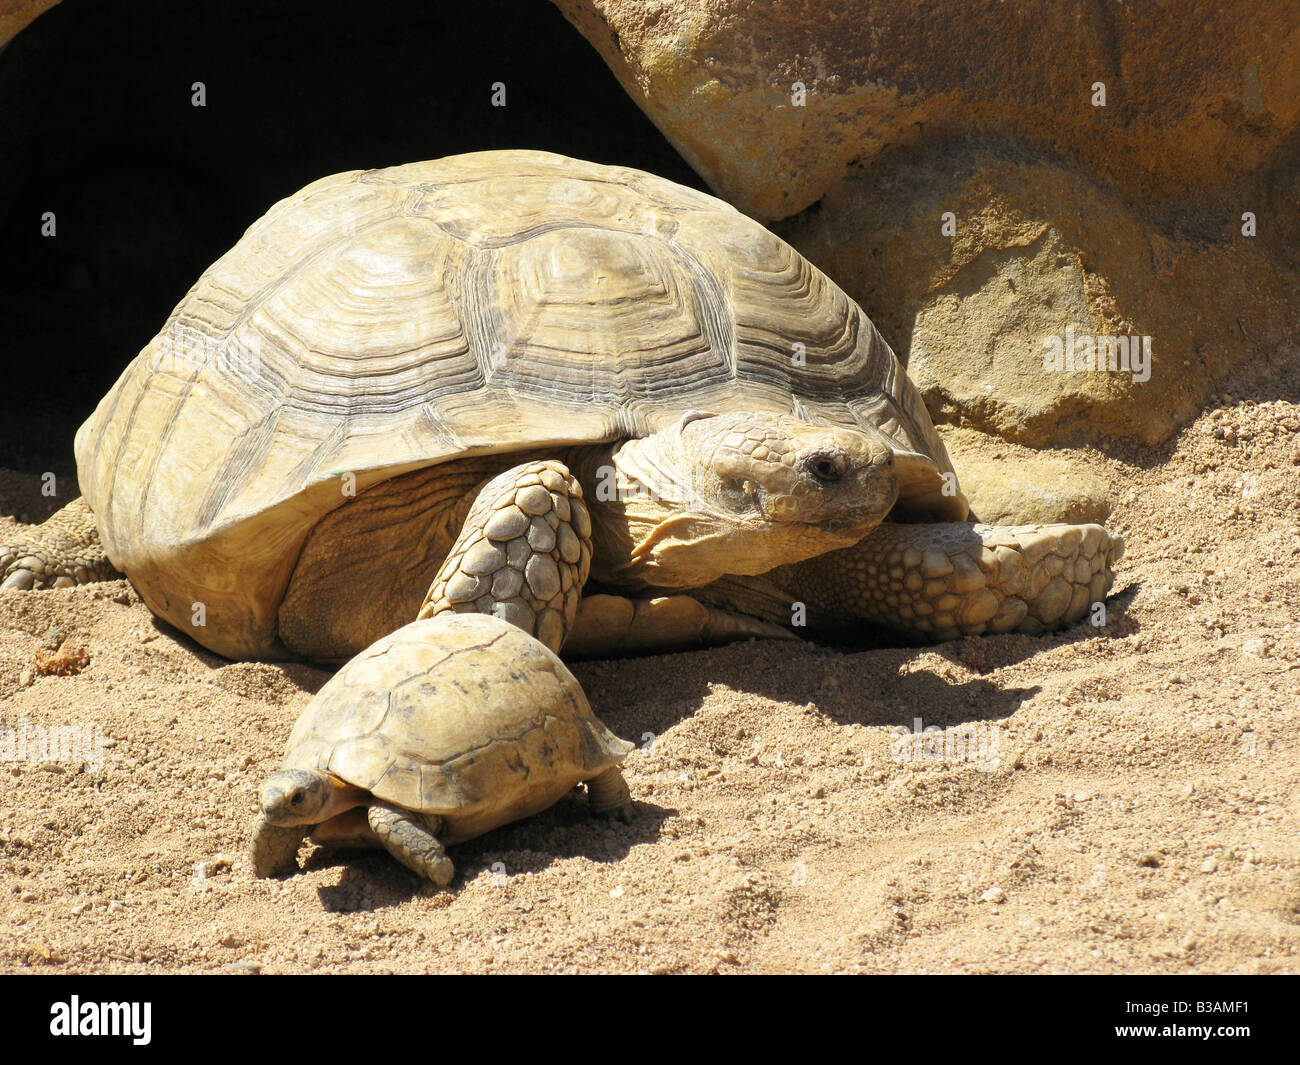 Las tortugas en el desierto Foto de stock